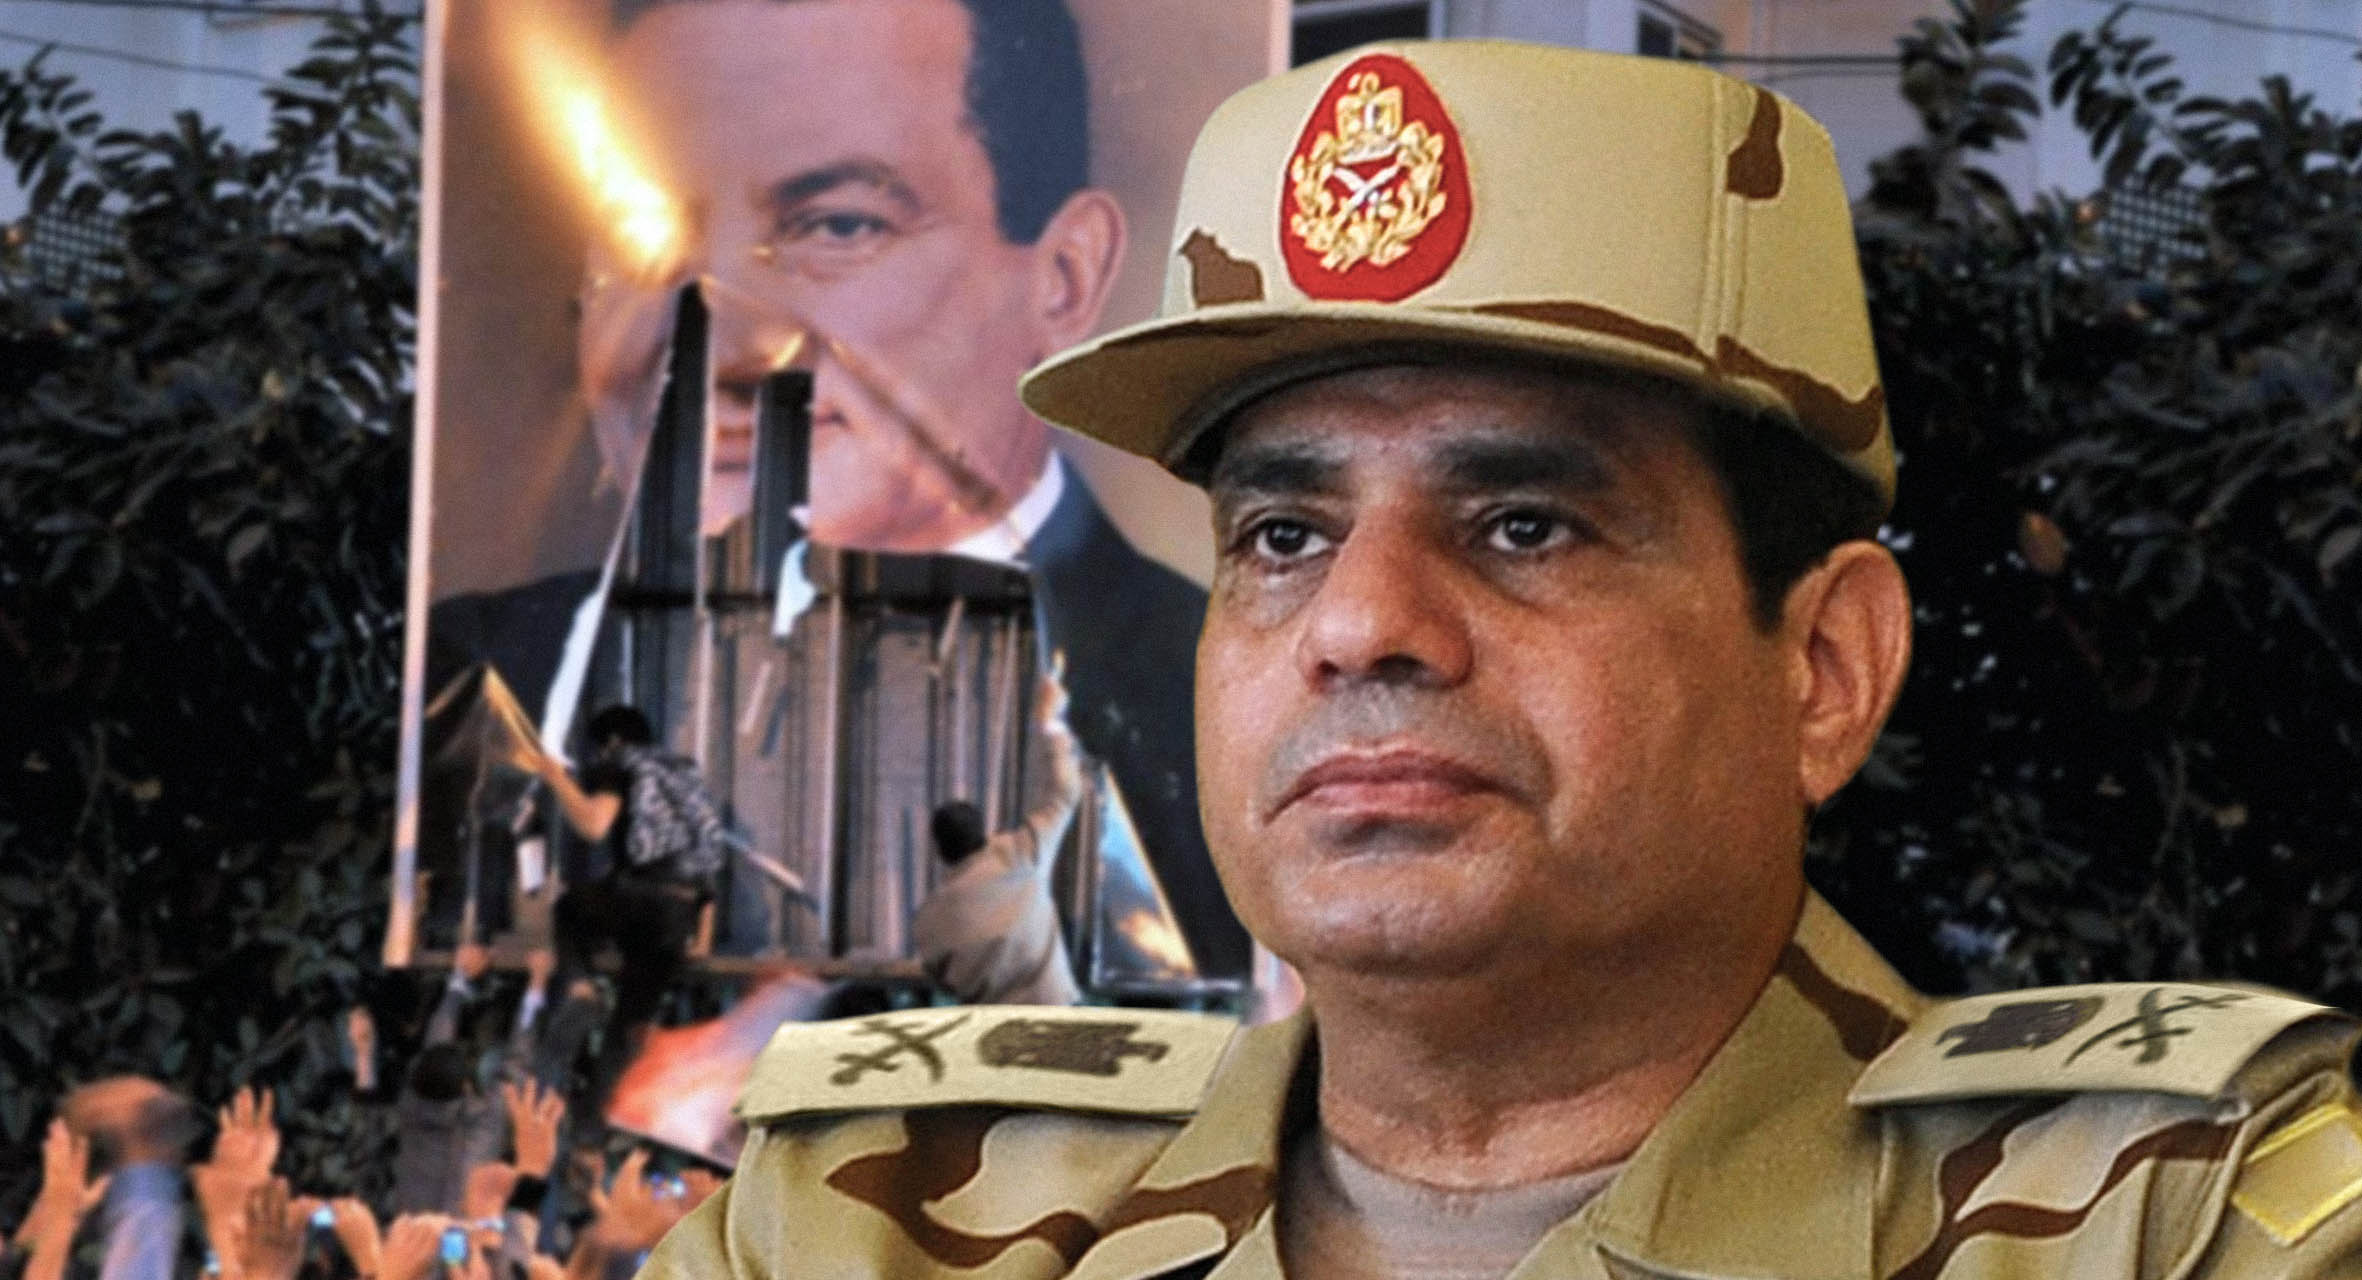 صورة قصة نجاح: عشر سنوات على علاج الجيش المصري شعبه الممسوس بالحلم